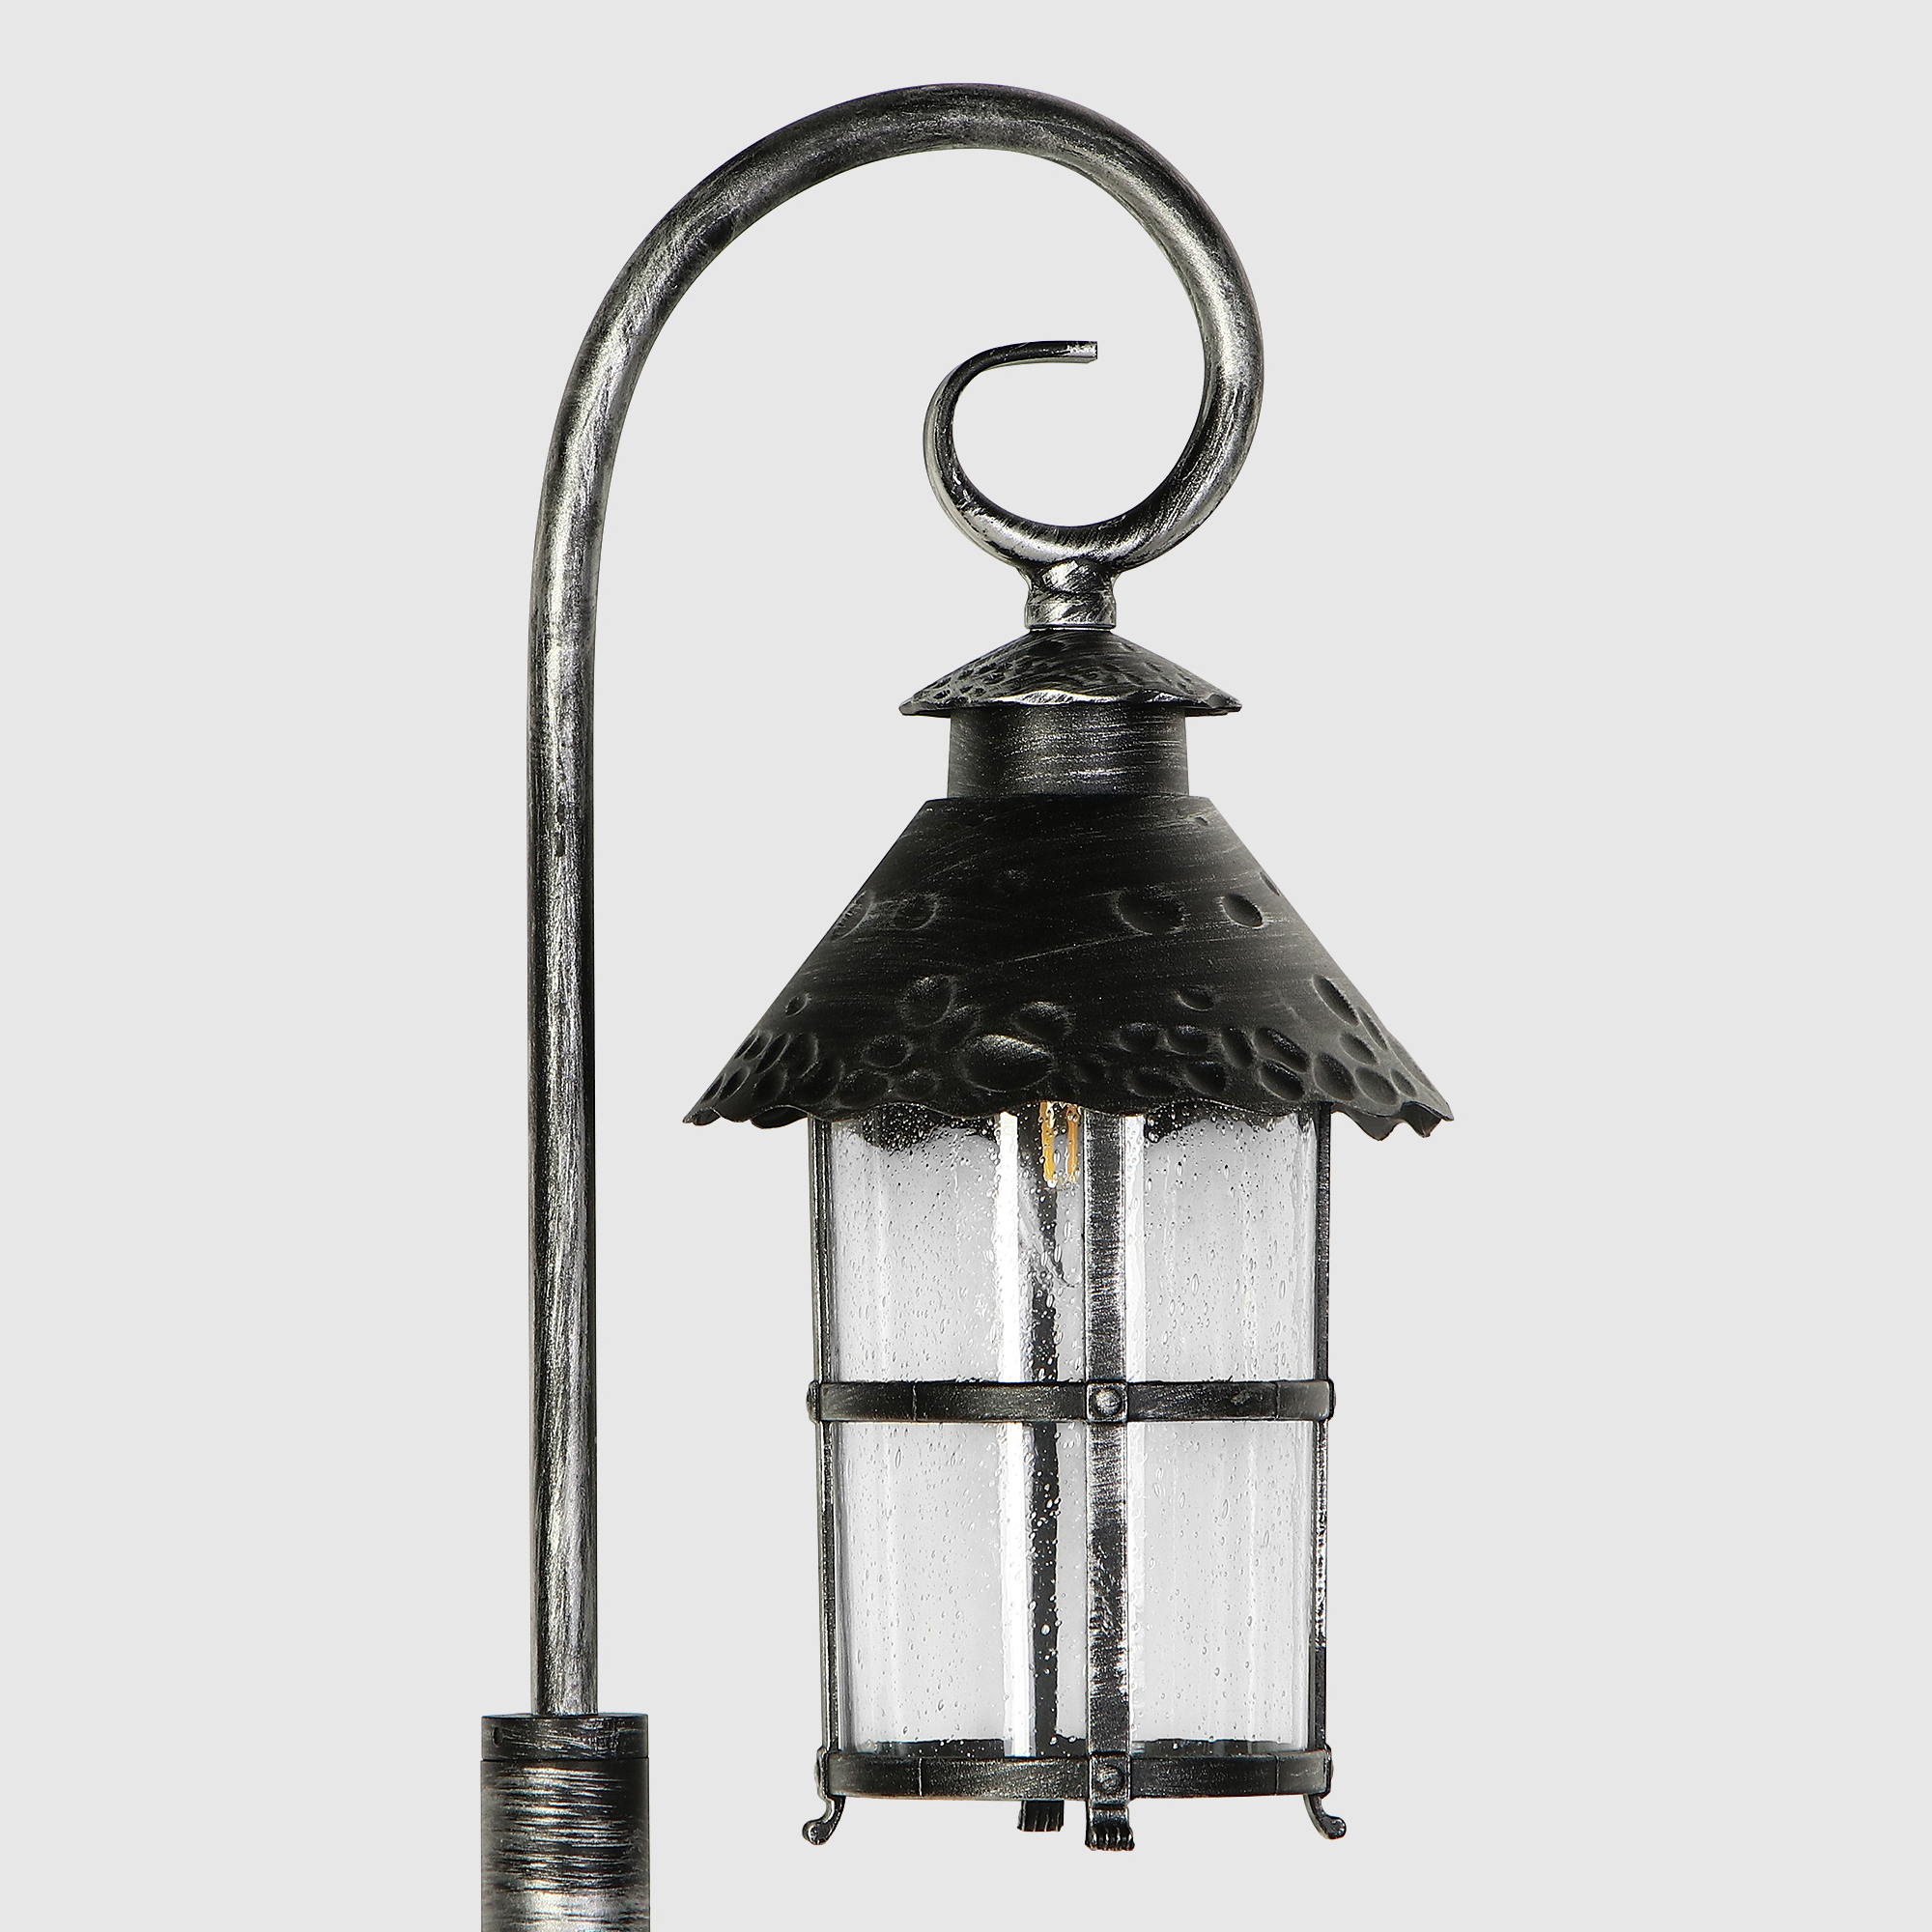 Светильник садовый Amber Lamp 8737 напольный IP23 E27 100Вт, чёрное серебро, цвет прозрачный, чёрное серебро - фото 3